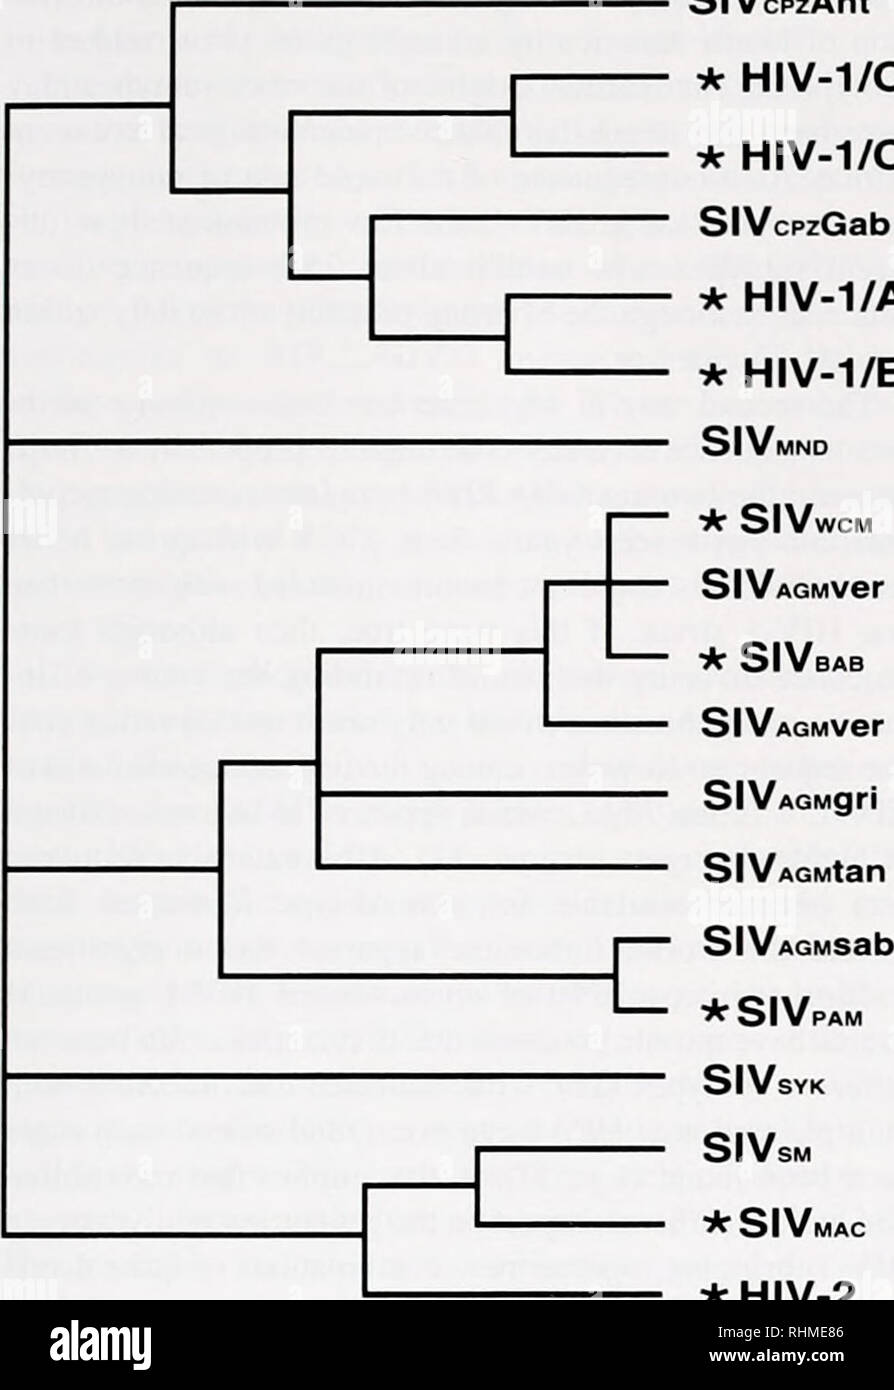 . Die biologische Bulletin. Biologie; Zoologie; Biologie; Meeresbiologie. EVOLUTION: Die molekulare Sicht 339 SIVcpzAnt * HIV-1/O * HIV-1/A SIVcpzGab * HIV-1/A* HIV-1/B SIVMND. * SIVMAC * HIV-2 Abbildung 1. Schematische Darstellung der Zusammenfassung der phylogenetischen Beziehungen unter den Primaten Lentiviren. Das Simian Immunodeficiency Virus (SIV) haben eine Determinante bezeichnet die Tierart, von der sie isoliert wurden: Diese sind Schimpansen (CPZl. mandnll (MND). white-gekrönten mangabey (WCM), afrikanischen grünen Affen (AGM), Pavian (BABt. husarenaffe (PAM). Sykes' Monkey (syk), rußigen mangabey (SM). und Makaken (MA Stockfoto